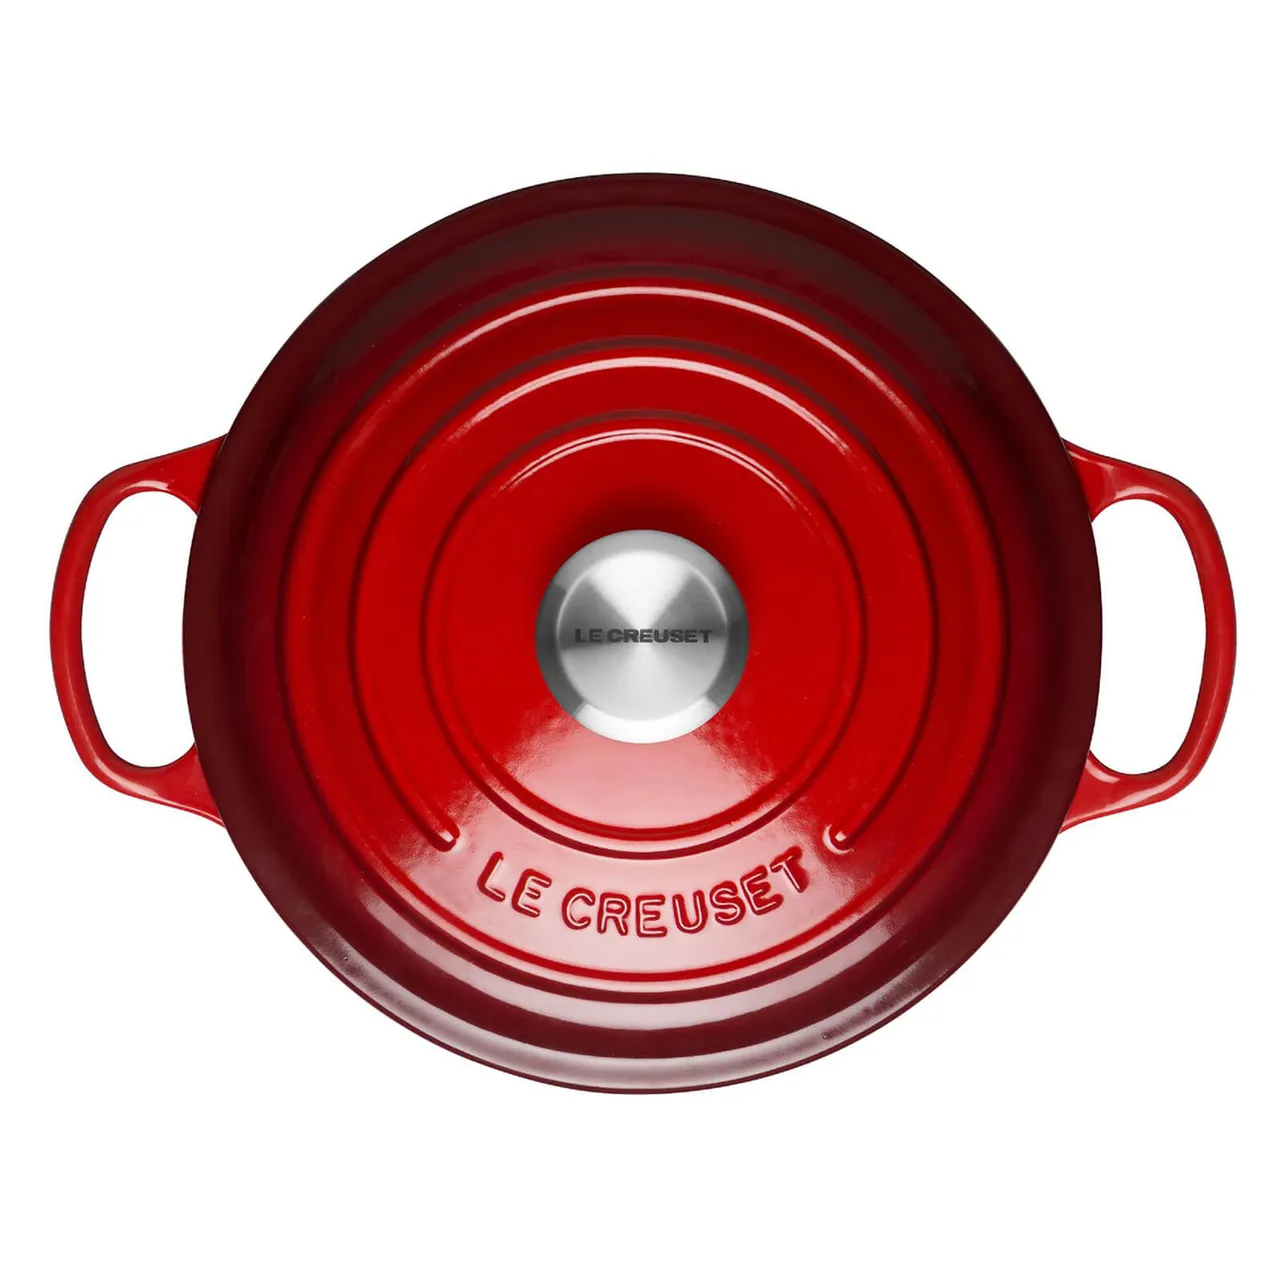 Le Creuset Signature Cast Iron Round Casserole Dish - 24cm - Cerise